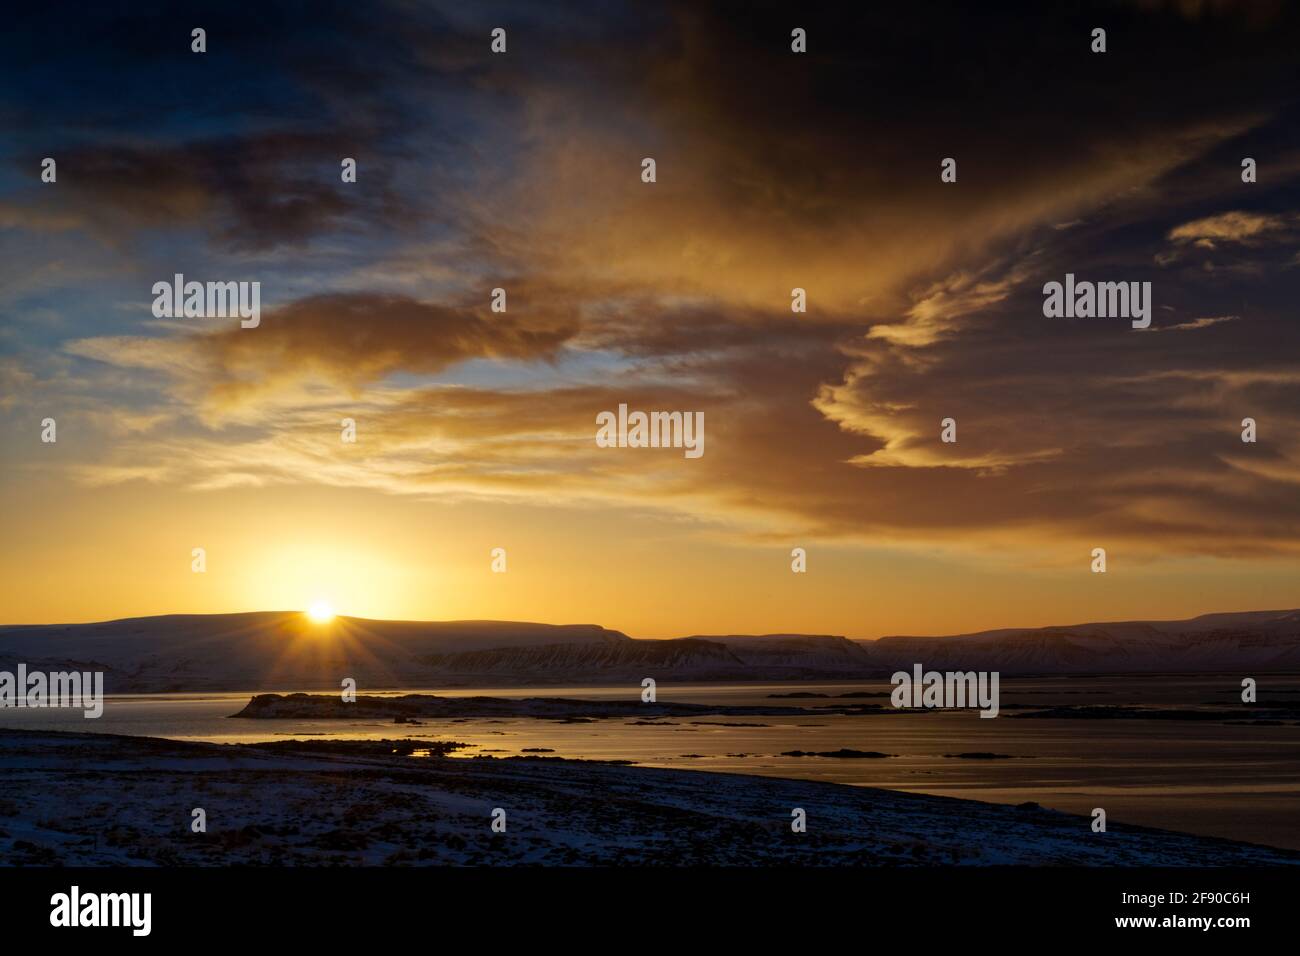 Paysage avec ciel nuageux au coucher du soleil, Islande Banque D'Images